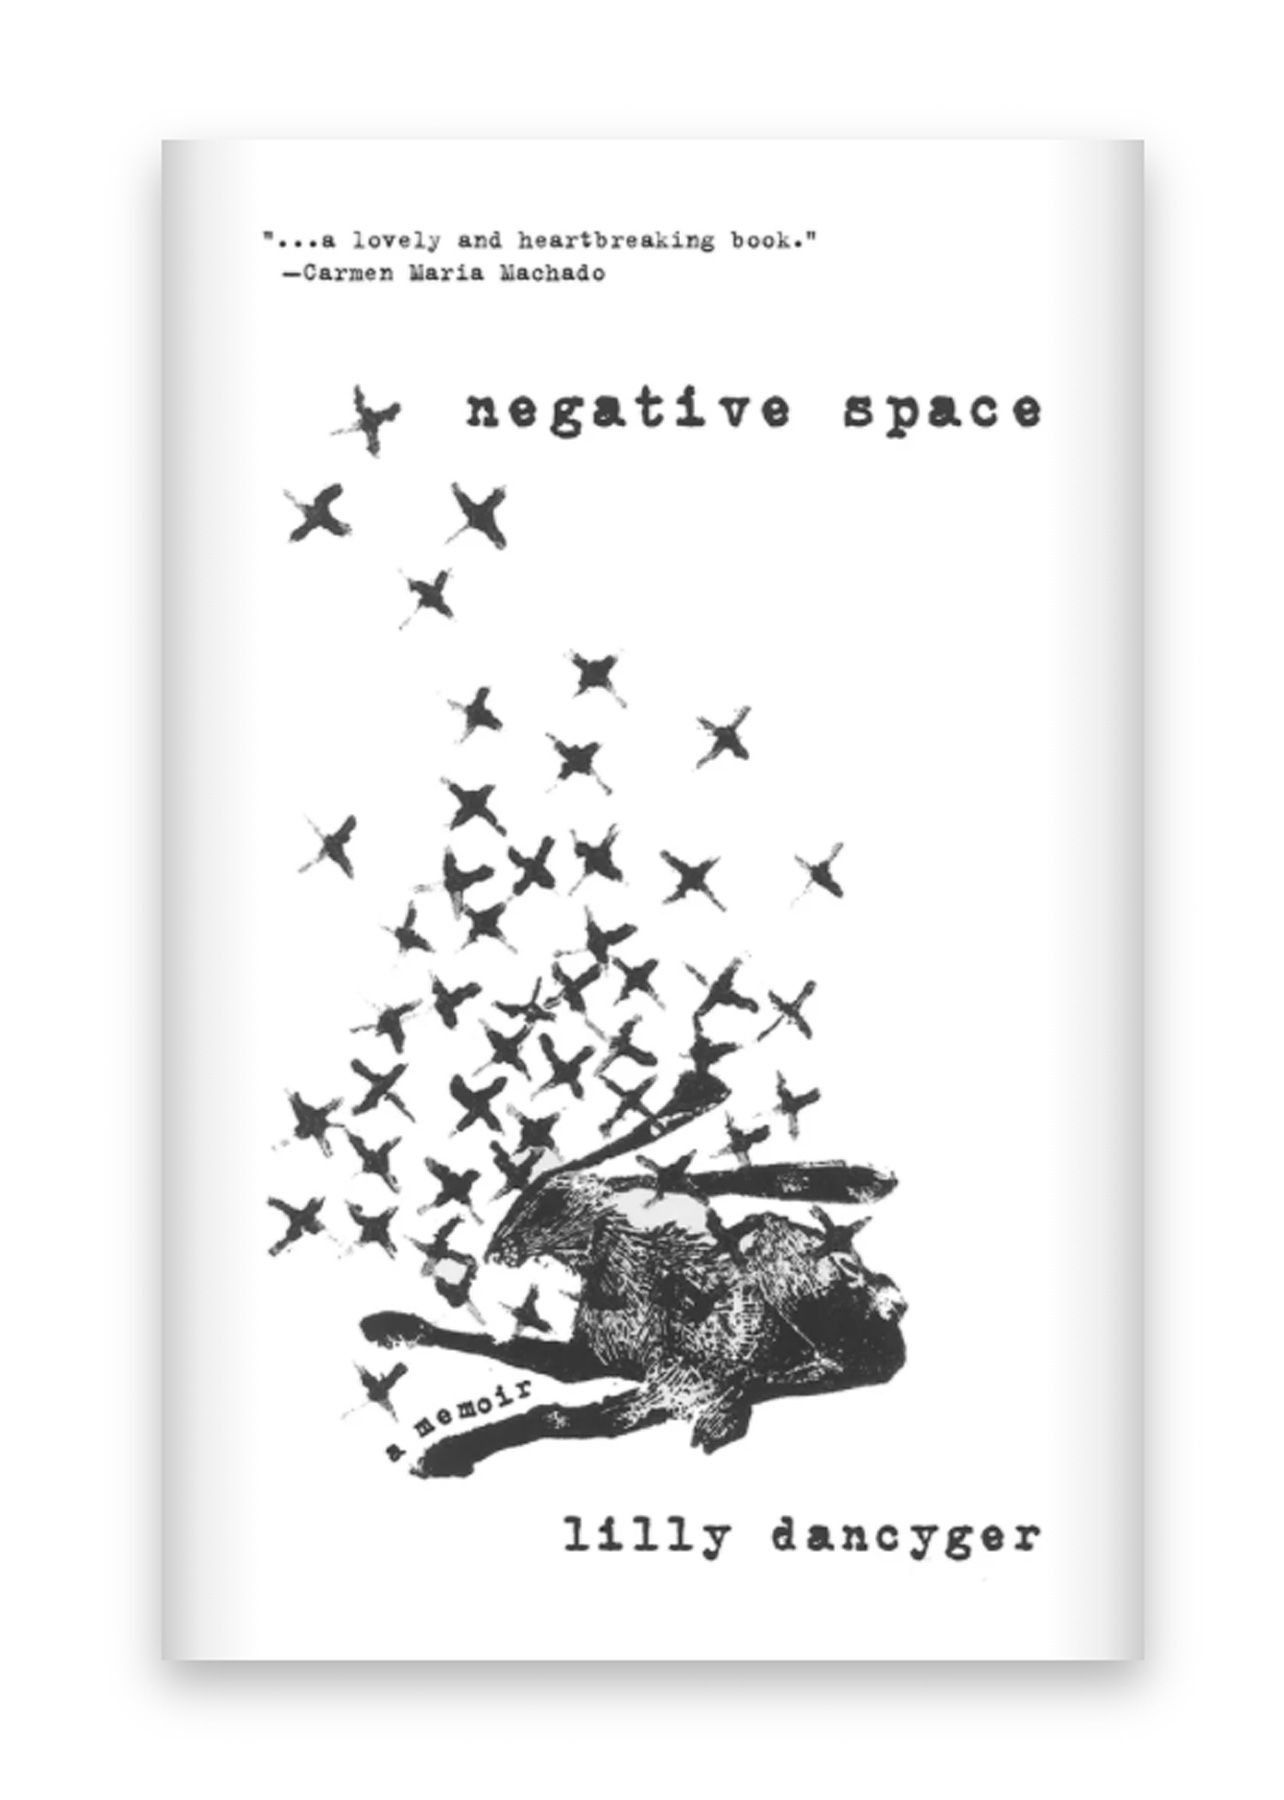 أفضل كتب الربيع لقراءتها عام 2021: الفضاء السلبي بقلم ليلي دانجير